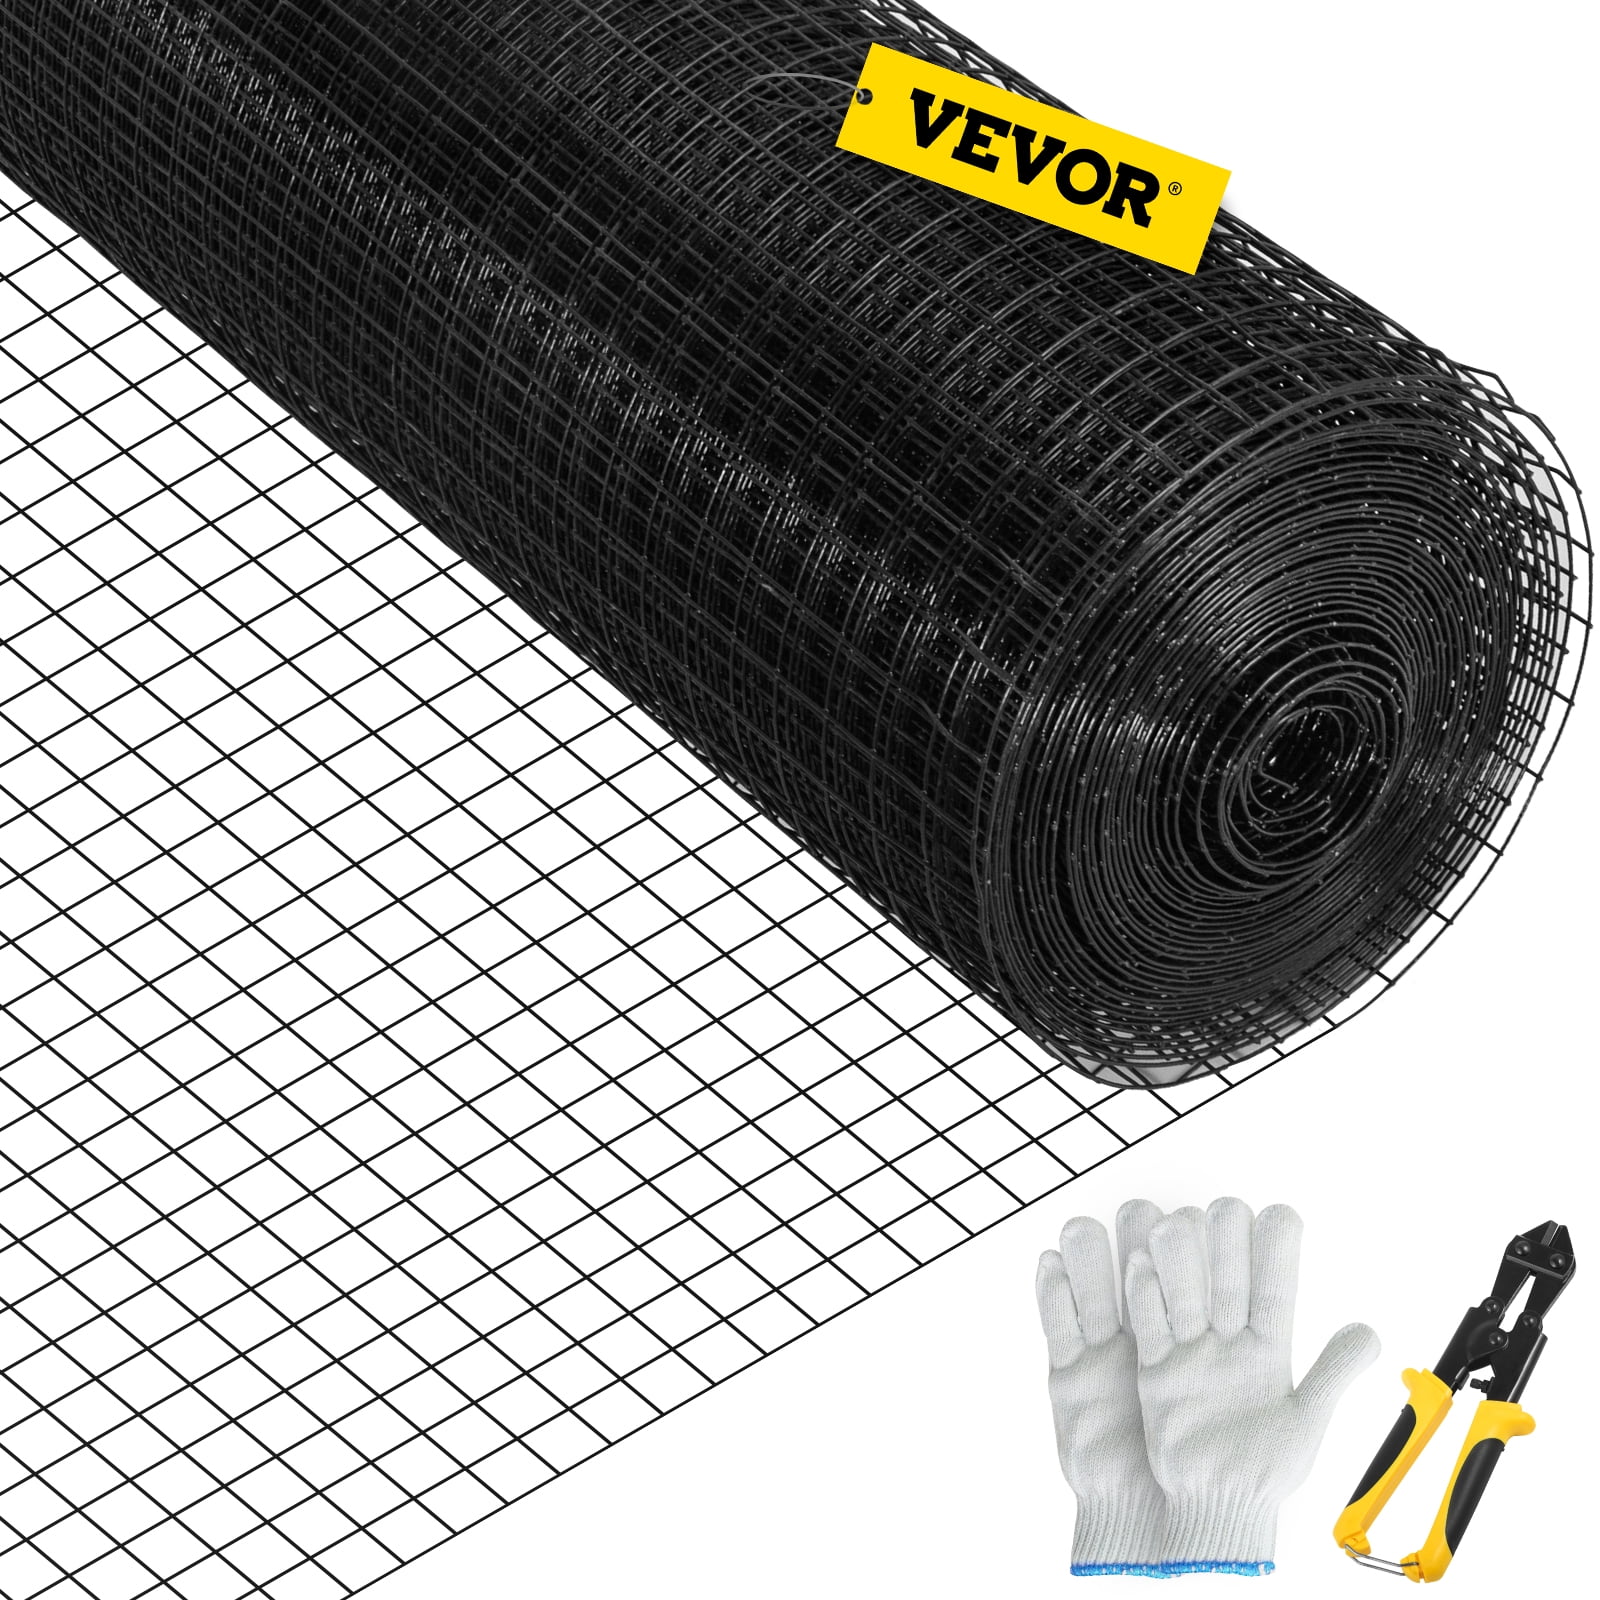 VEVOR Hardware Cloth, 24 inchx50' Welded Wire Fence Vinyl Coated Chicken Rabbit Mesh 1 inchx1 inch 16 Gauge, Size: 24 inch x 50